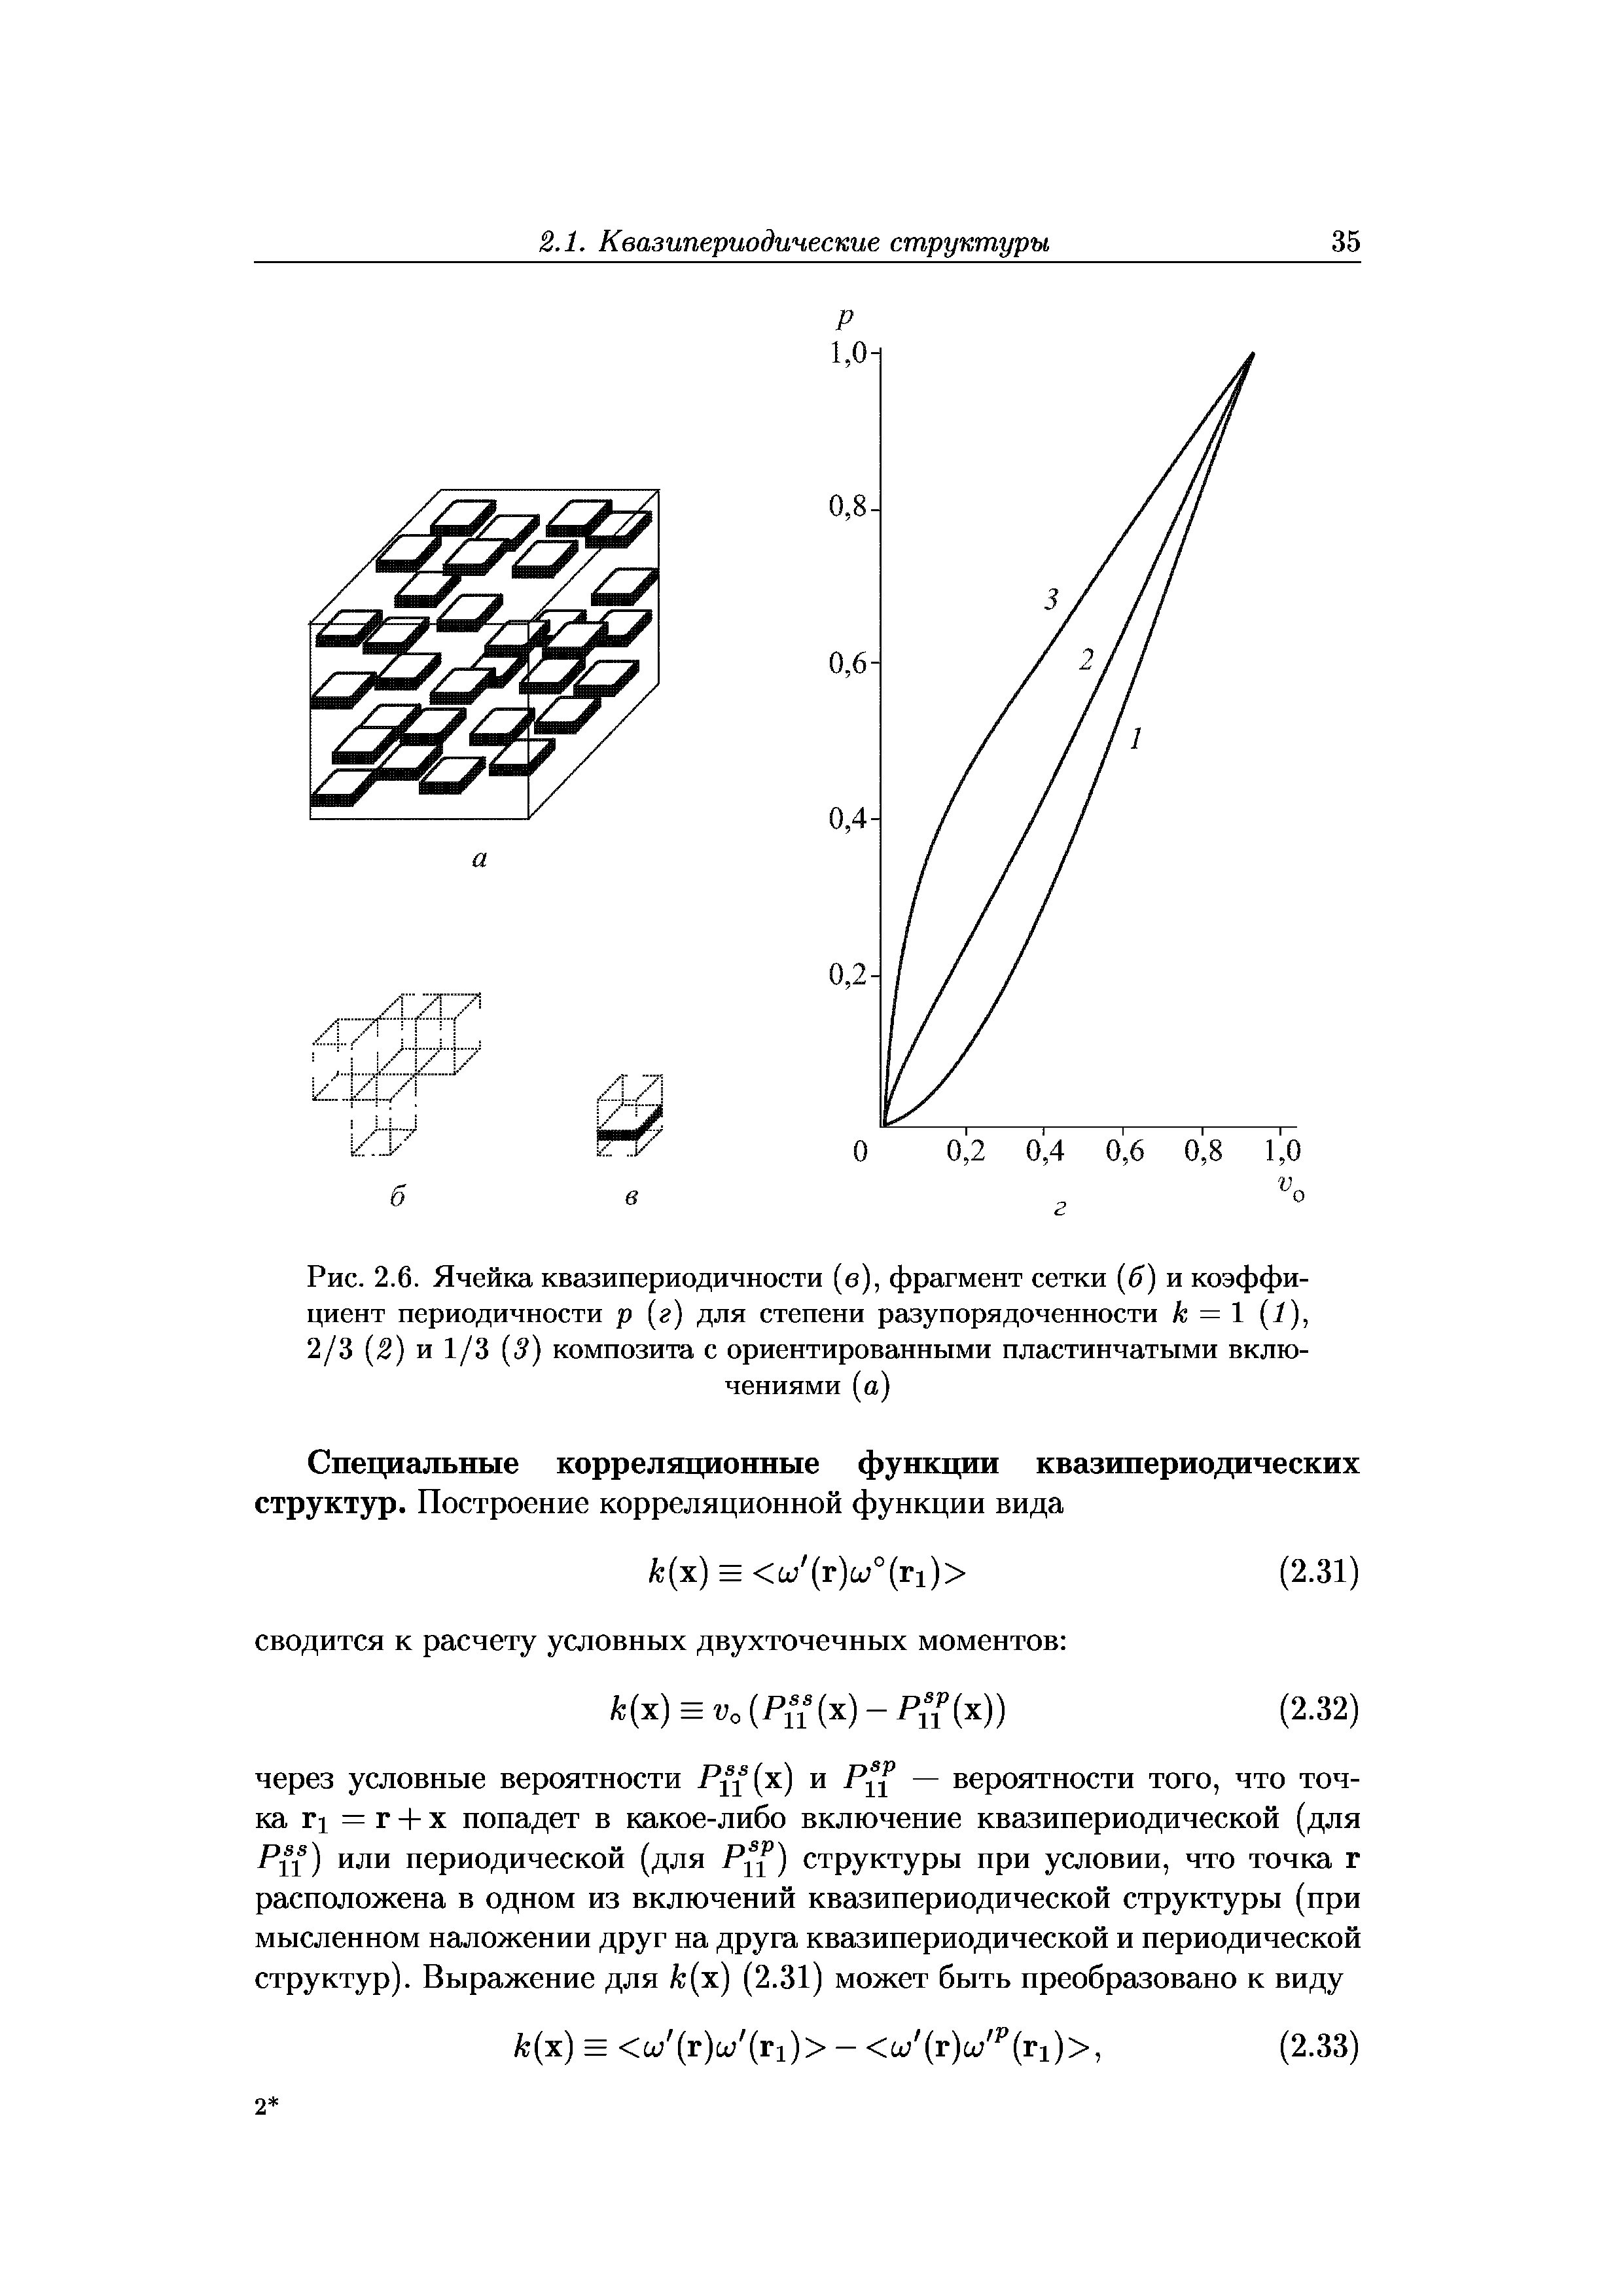 Рис. 2.6. Ячейка квазипериодичности (в), фрагмент сетки (5) и коэффициент периодичности р [г) для степени разупорядоченности к = 1 (1),
